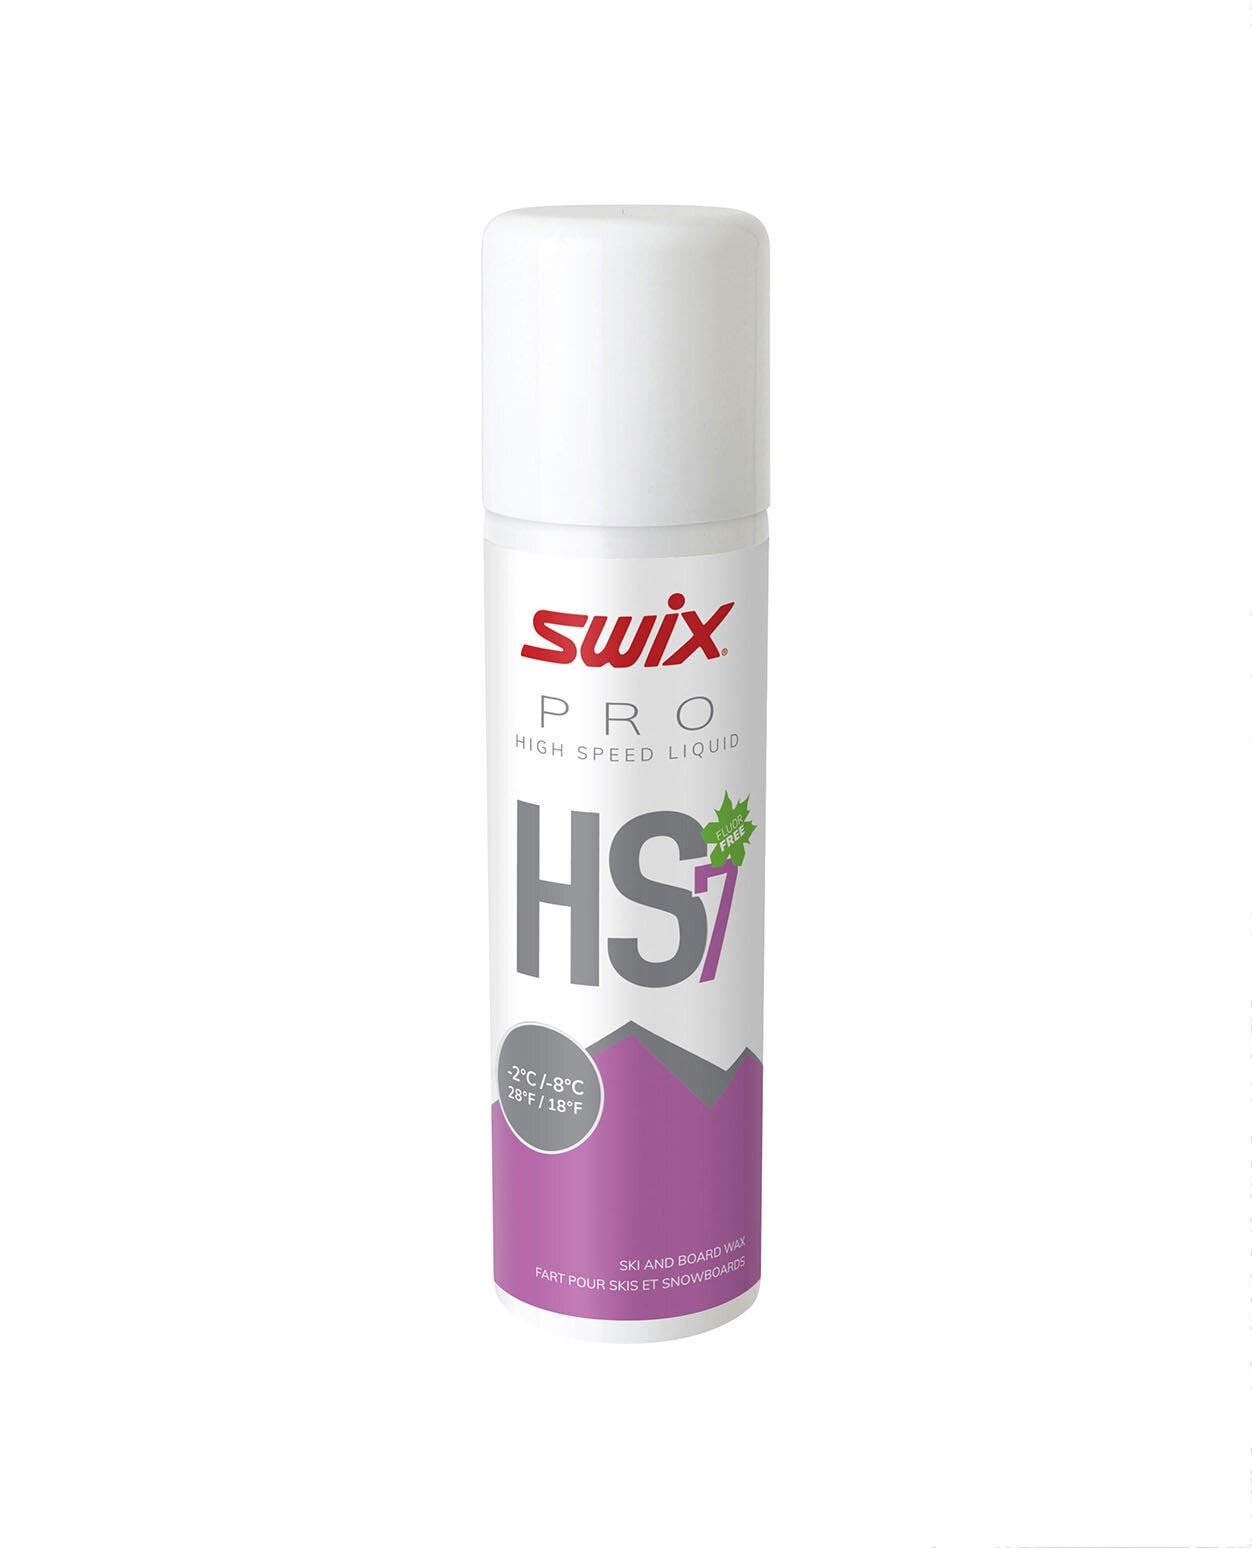 Swix HS7 Liquid Violet, -2°C/-8°C 125ml